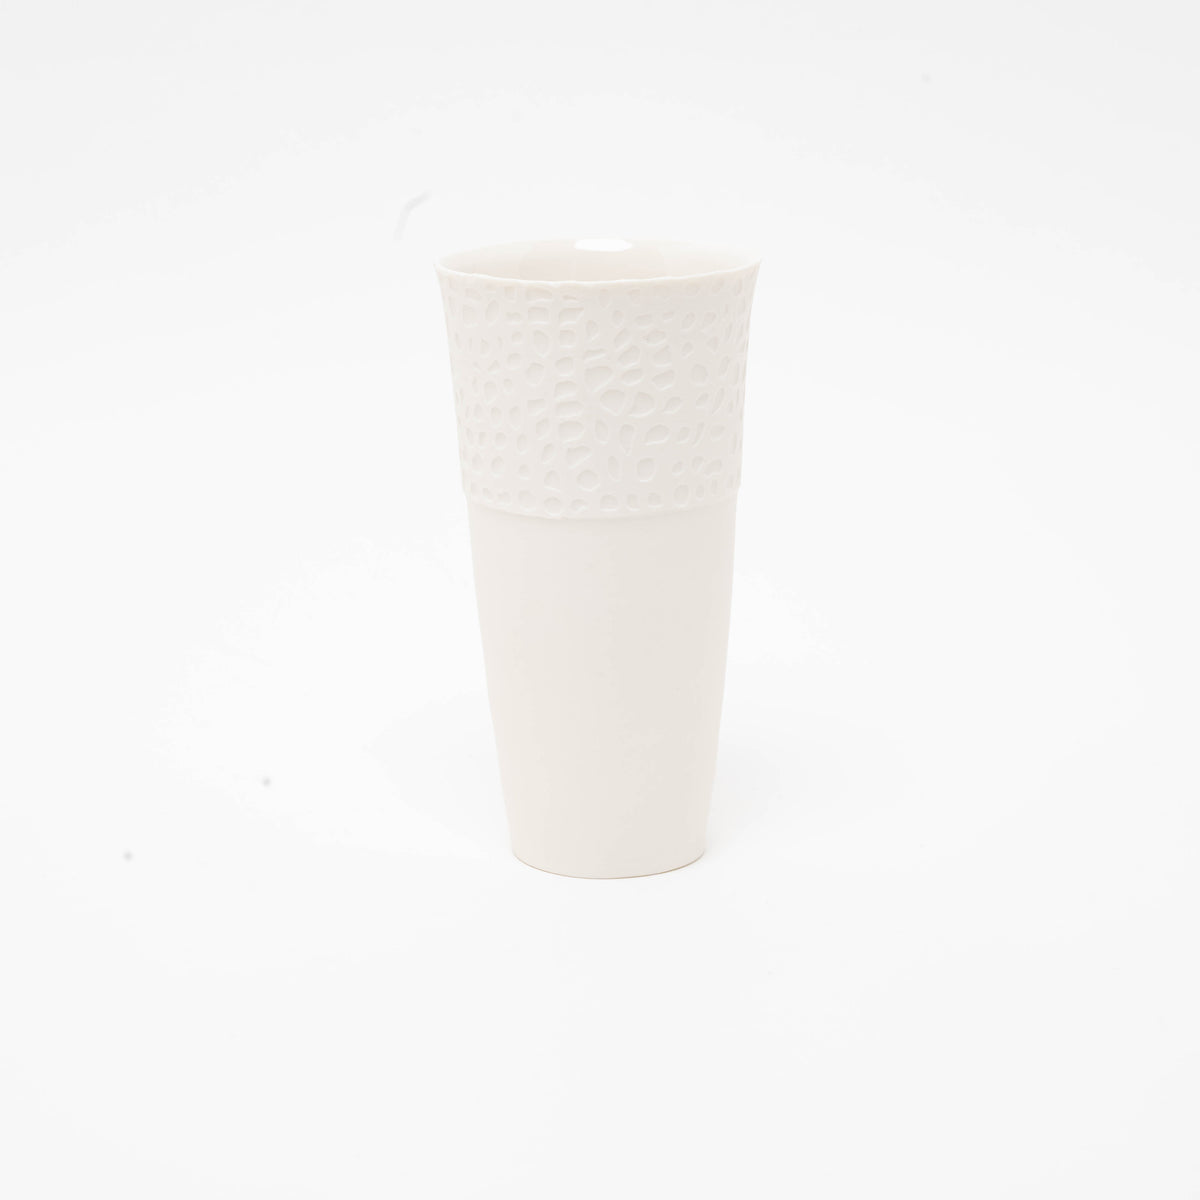 Porcelain vase No. 03